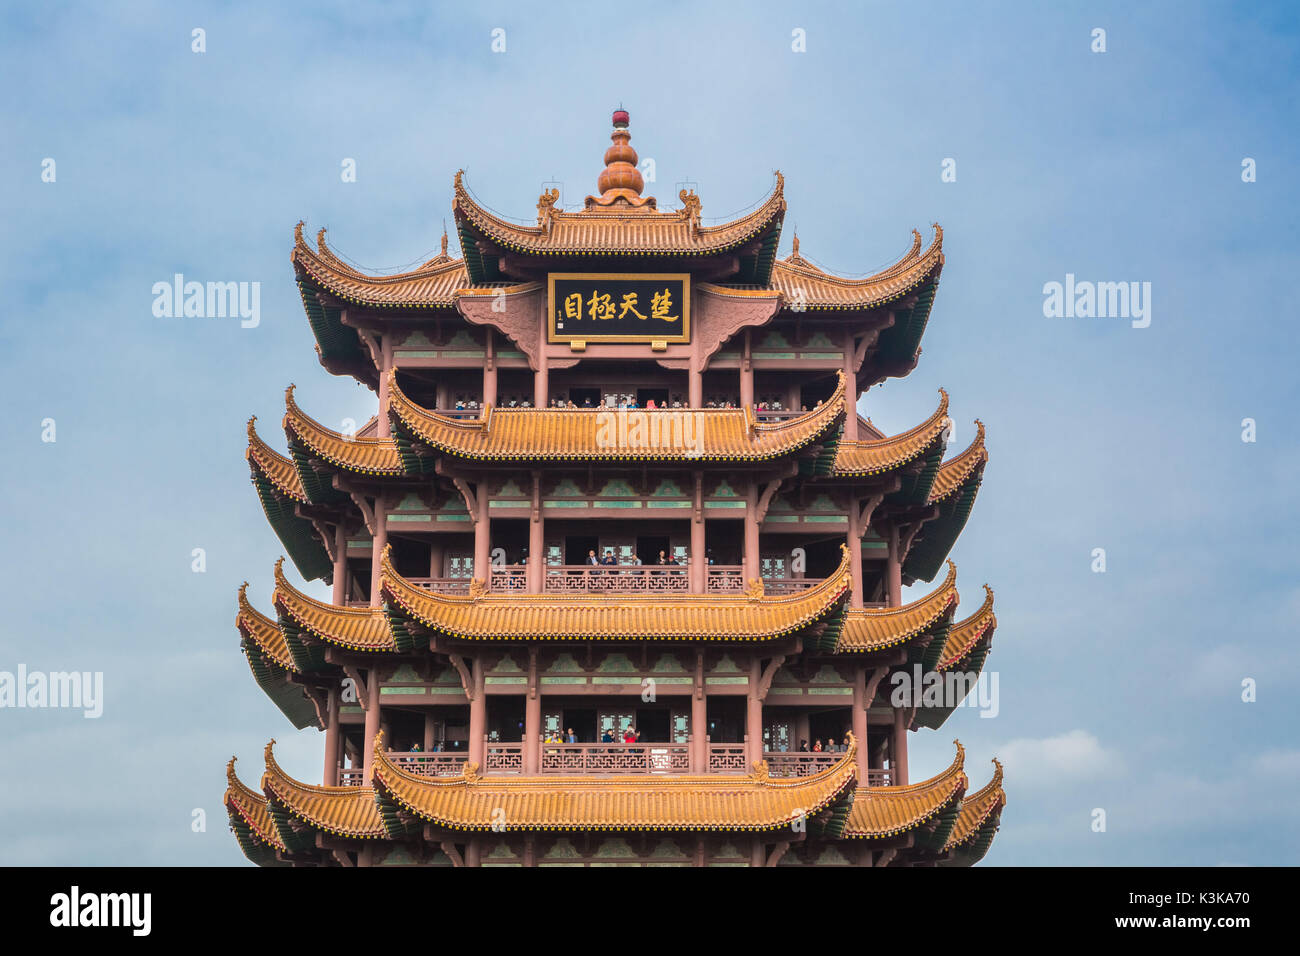 China, Wuhan City, Yellow Crane Tower Stock Photo